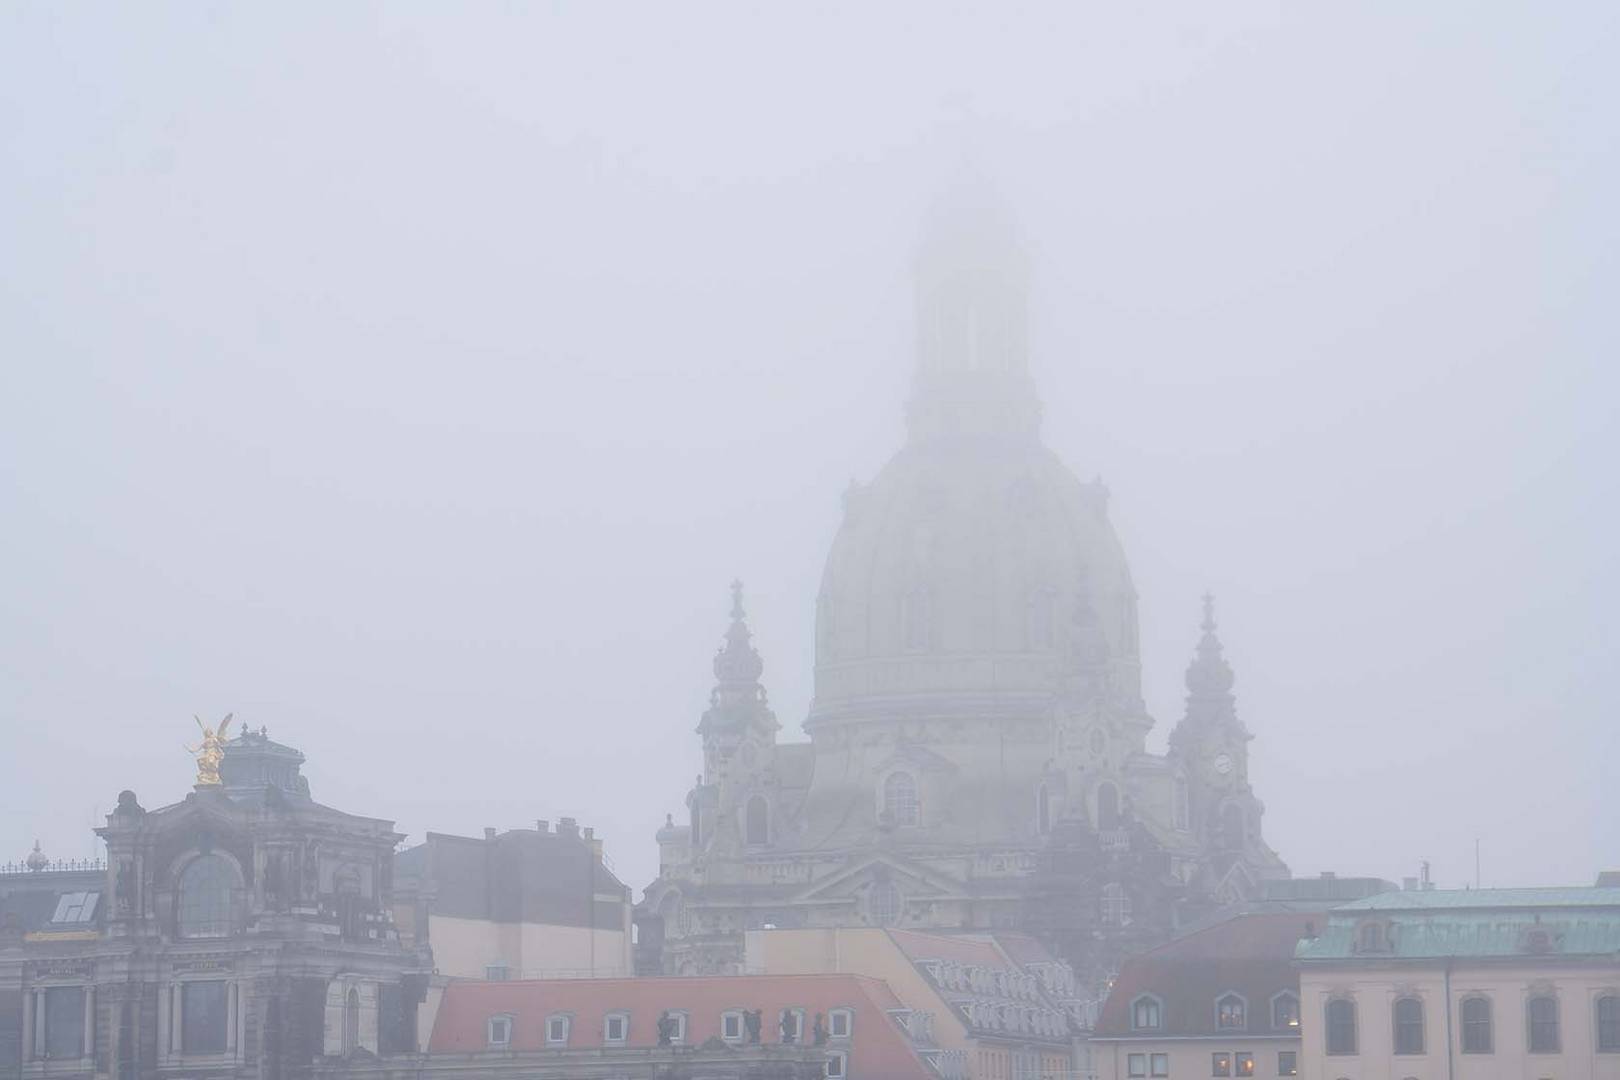 Nebeldresden mit Frauenkirche